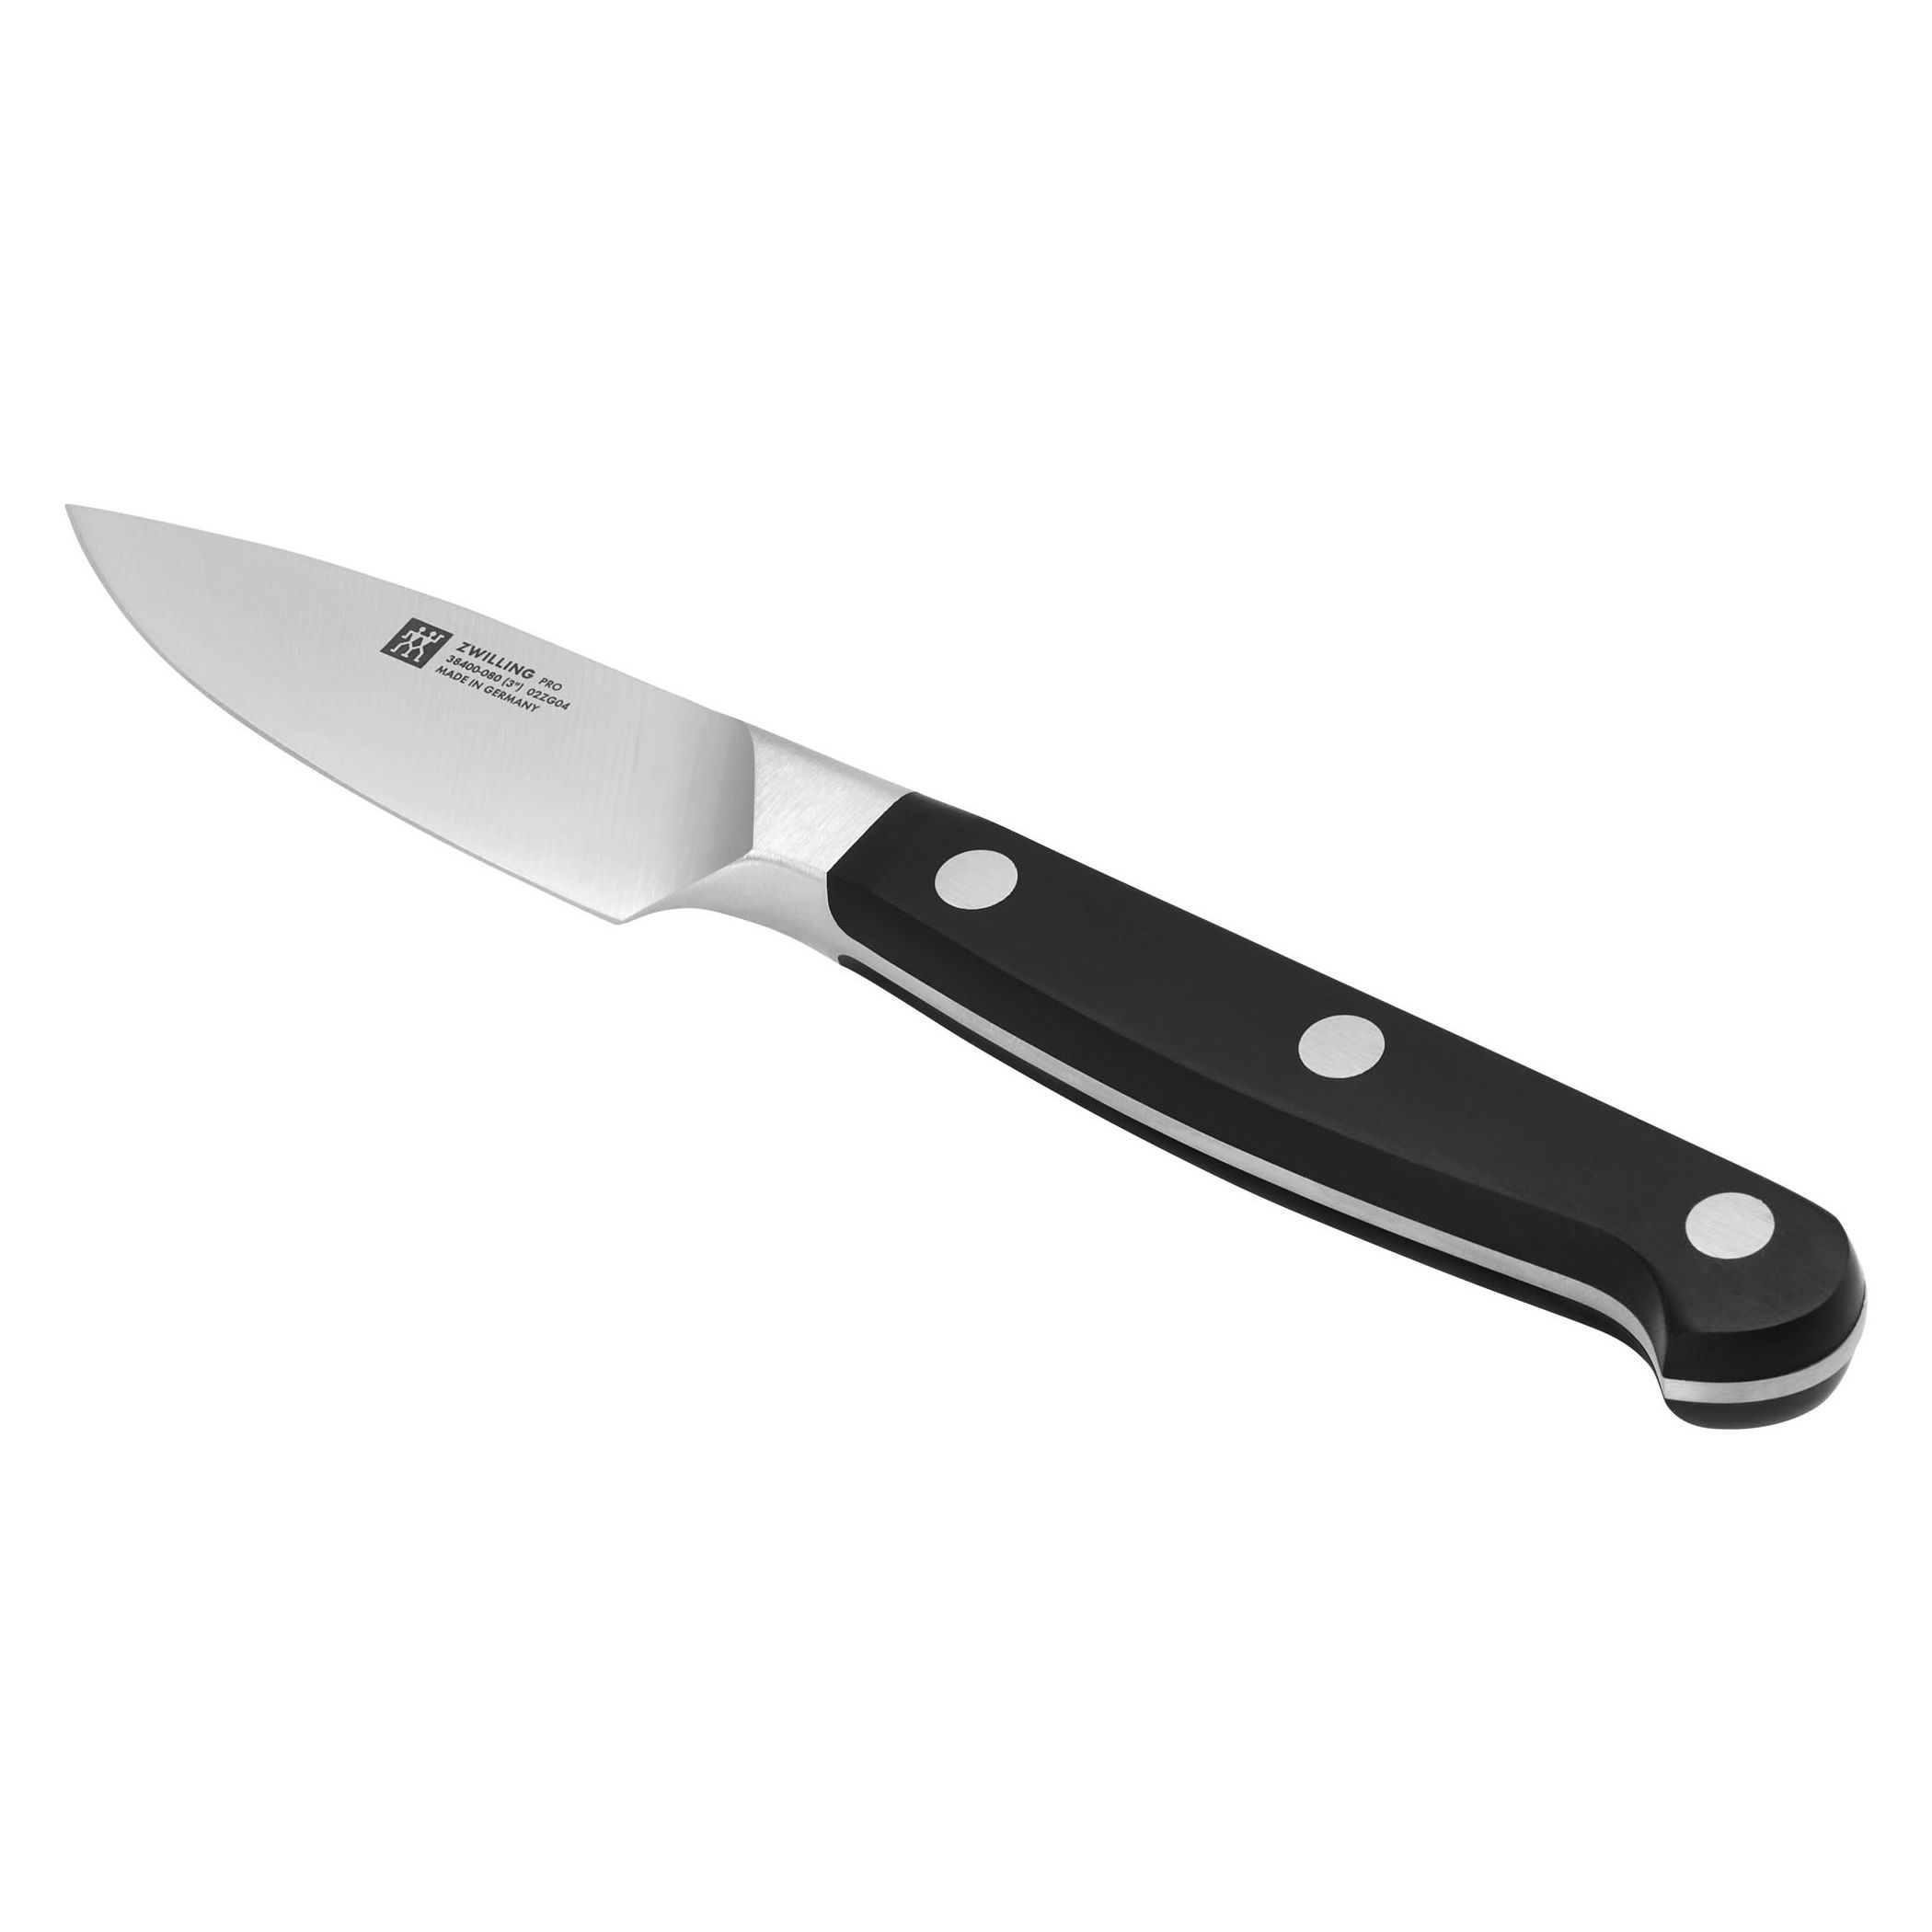 Zwilling Pro couteau à larder et garnir, 8 cm